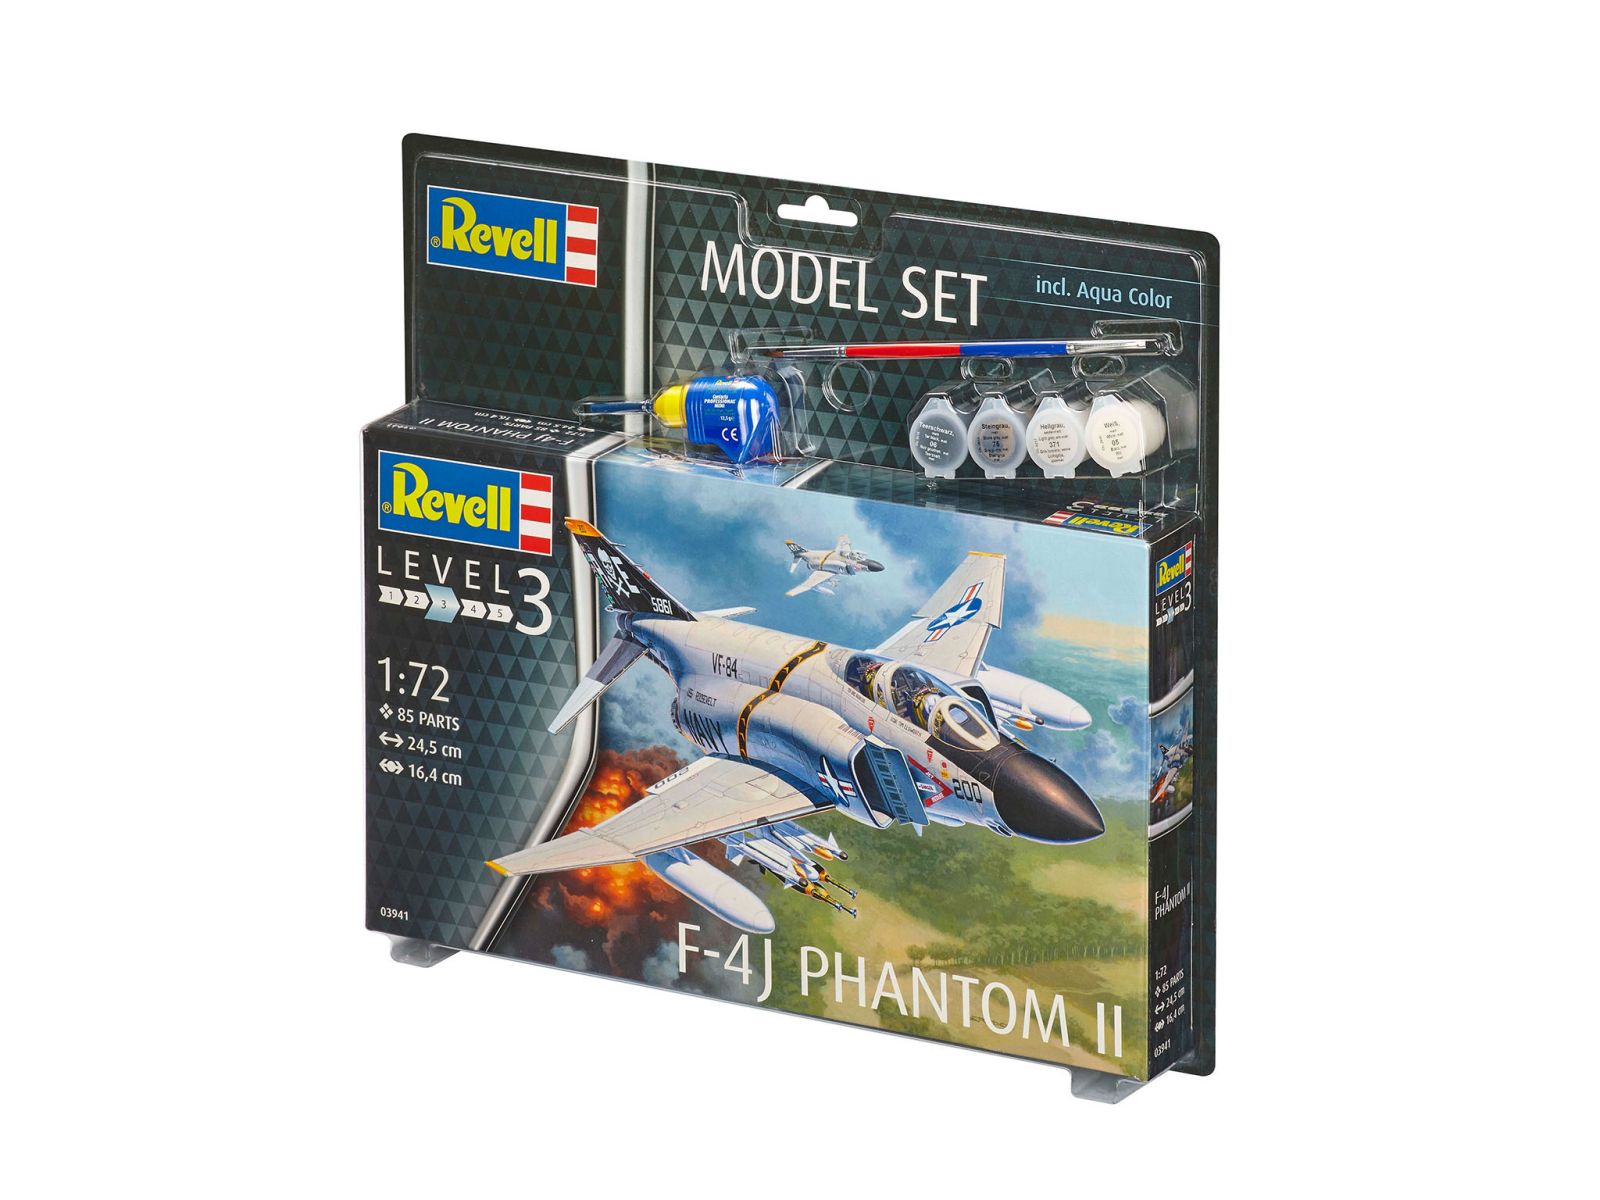 Revell 63941 - Model Set F-4J Phantom II